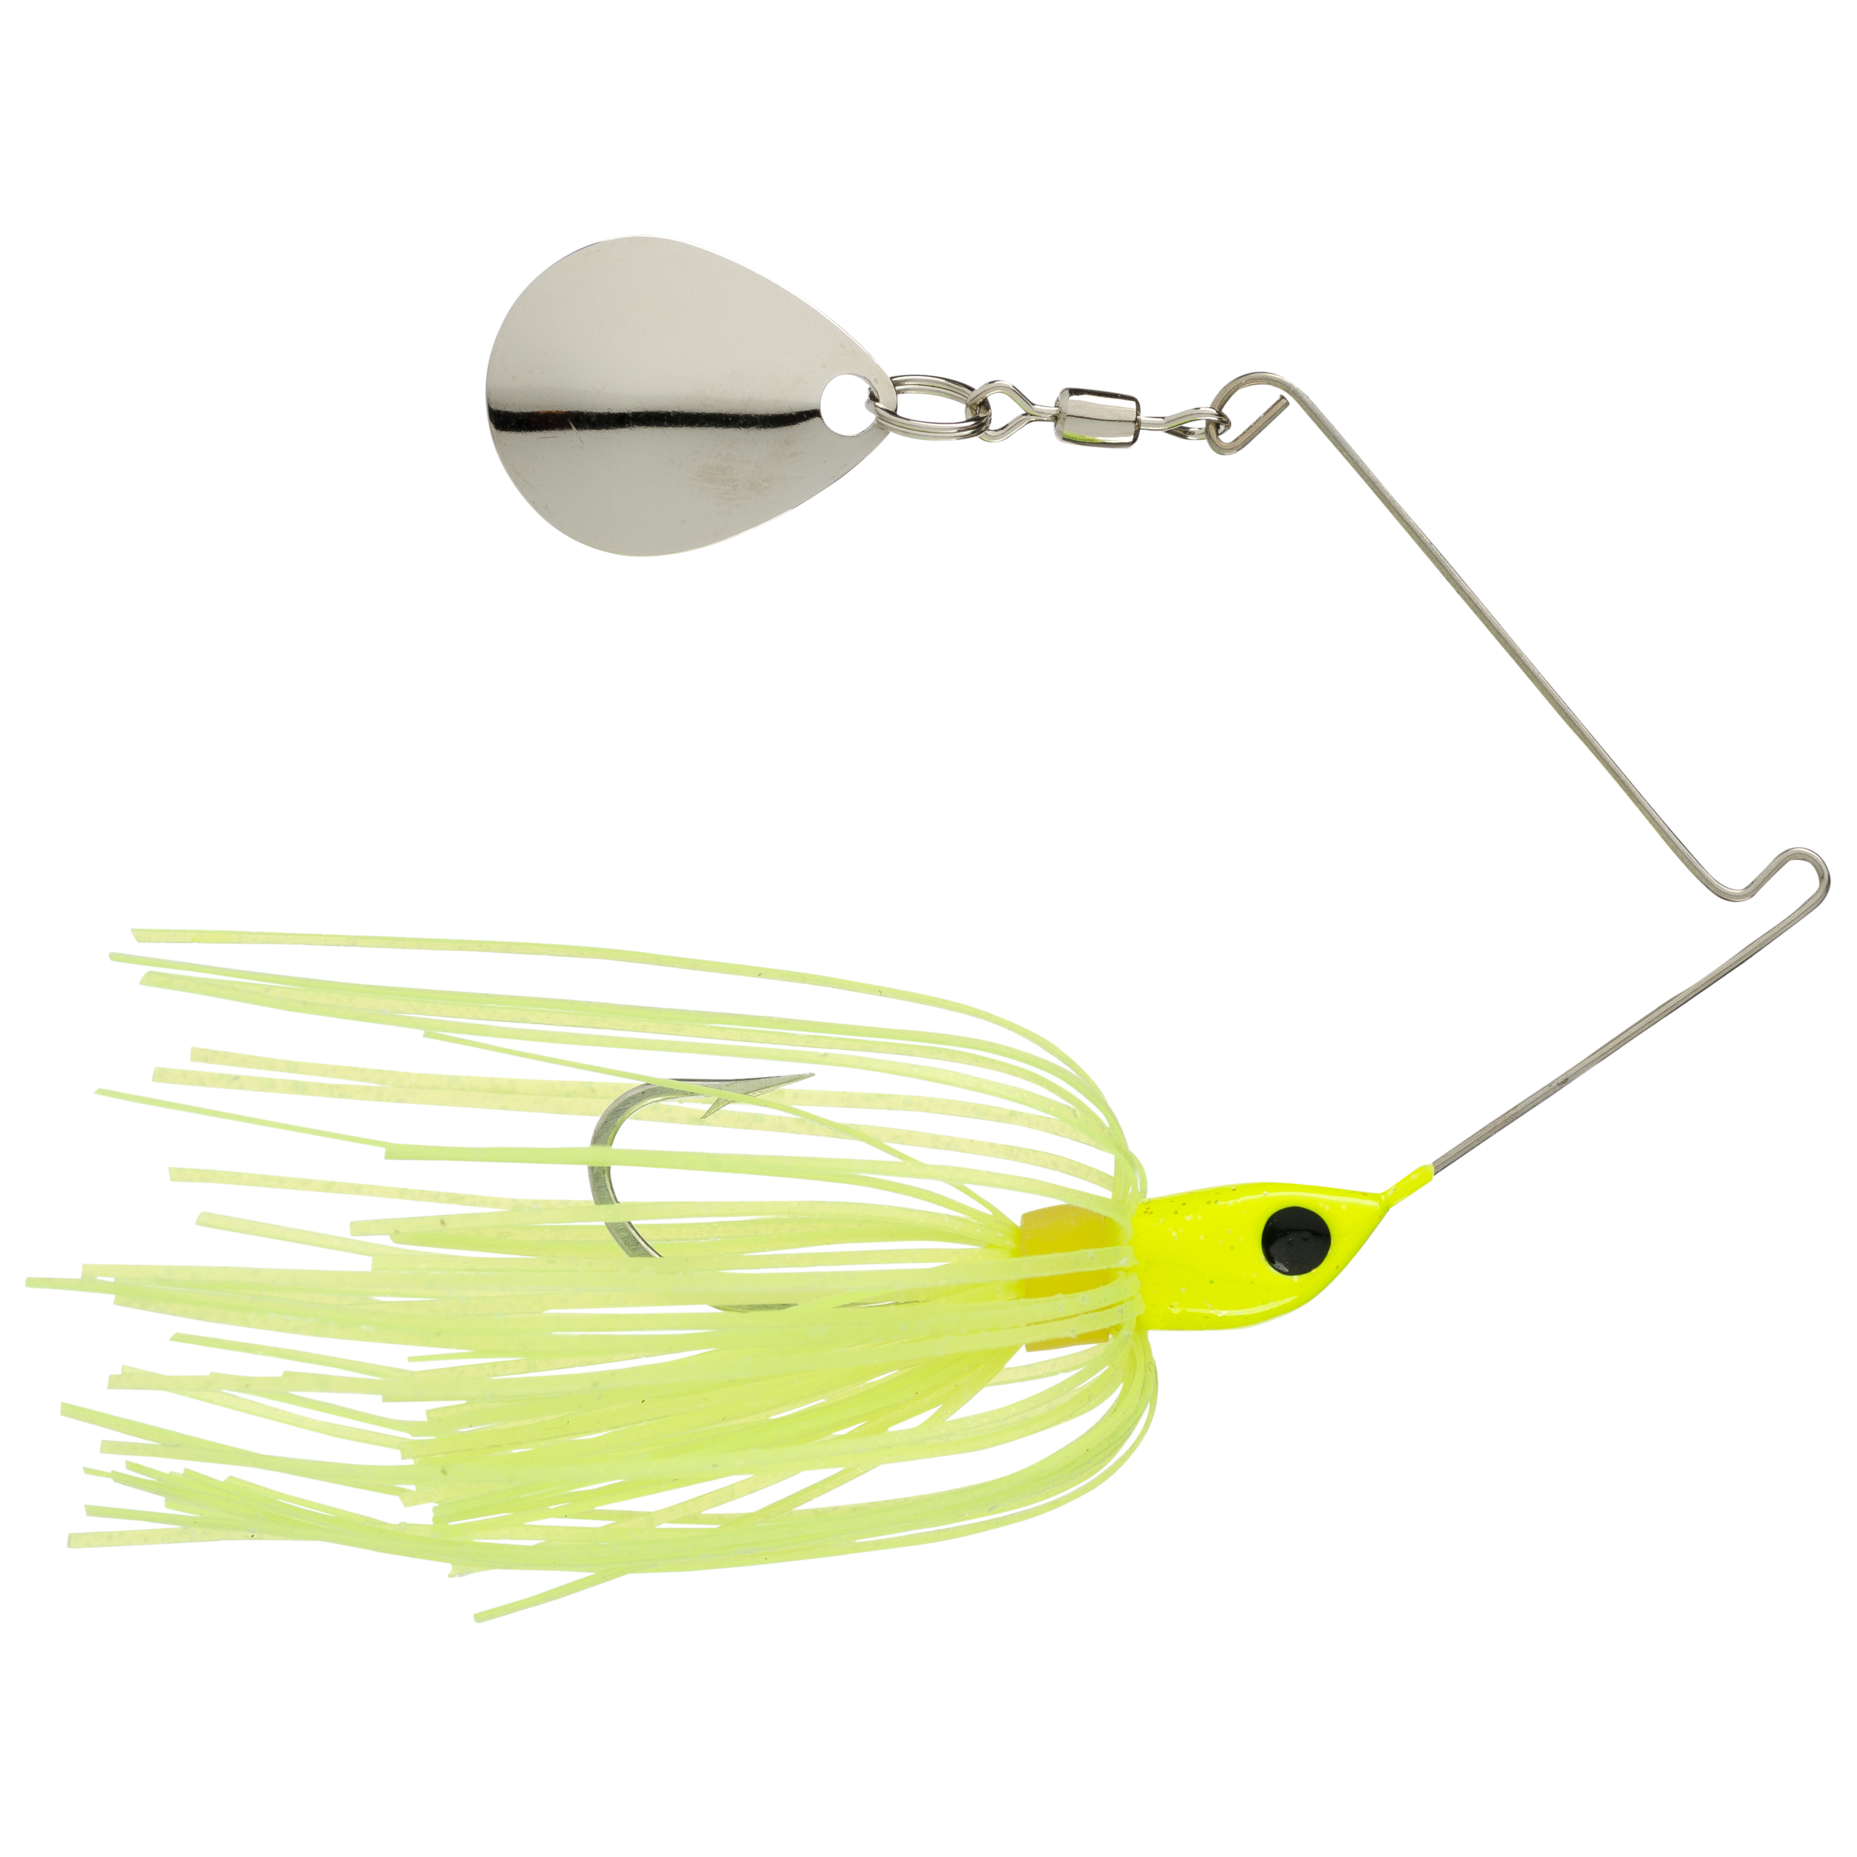 KVD Spinner bait : r/bassfishing